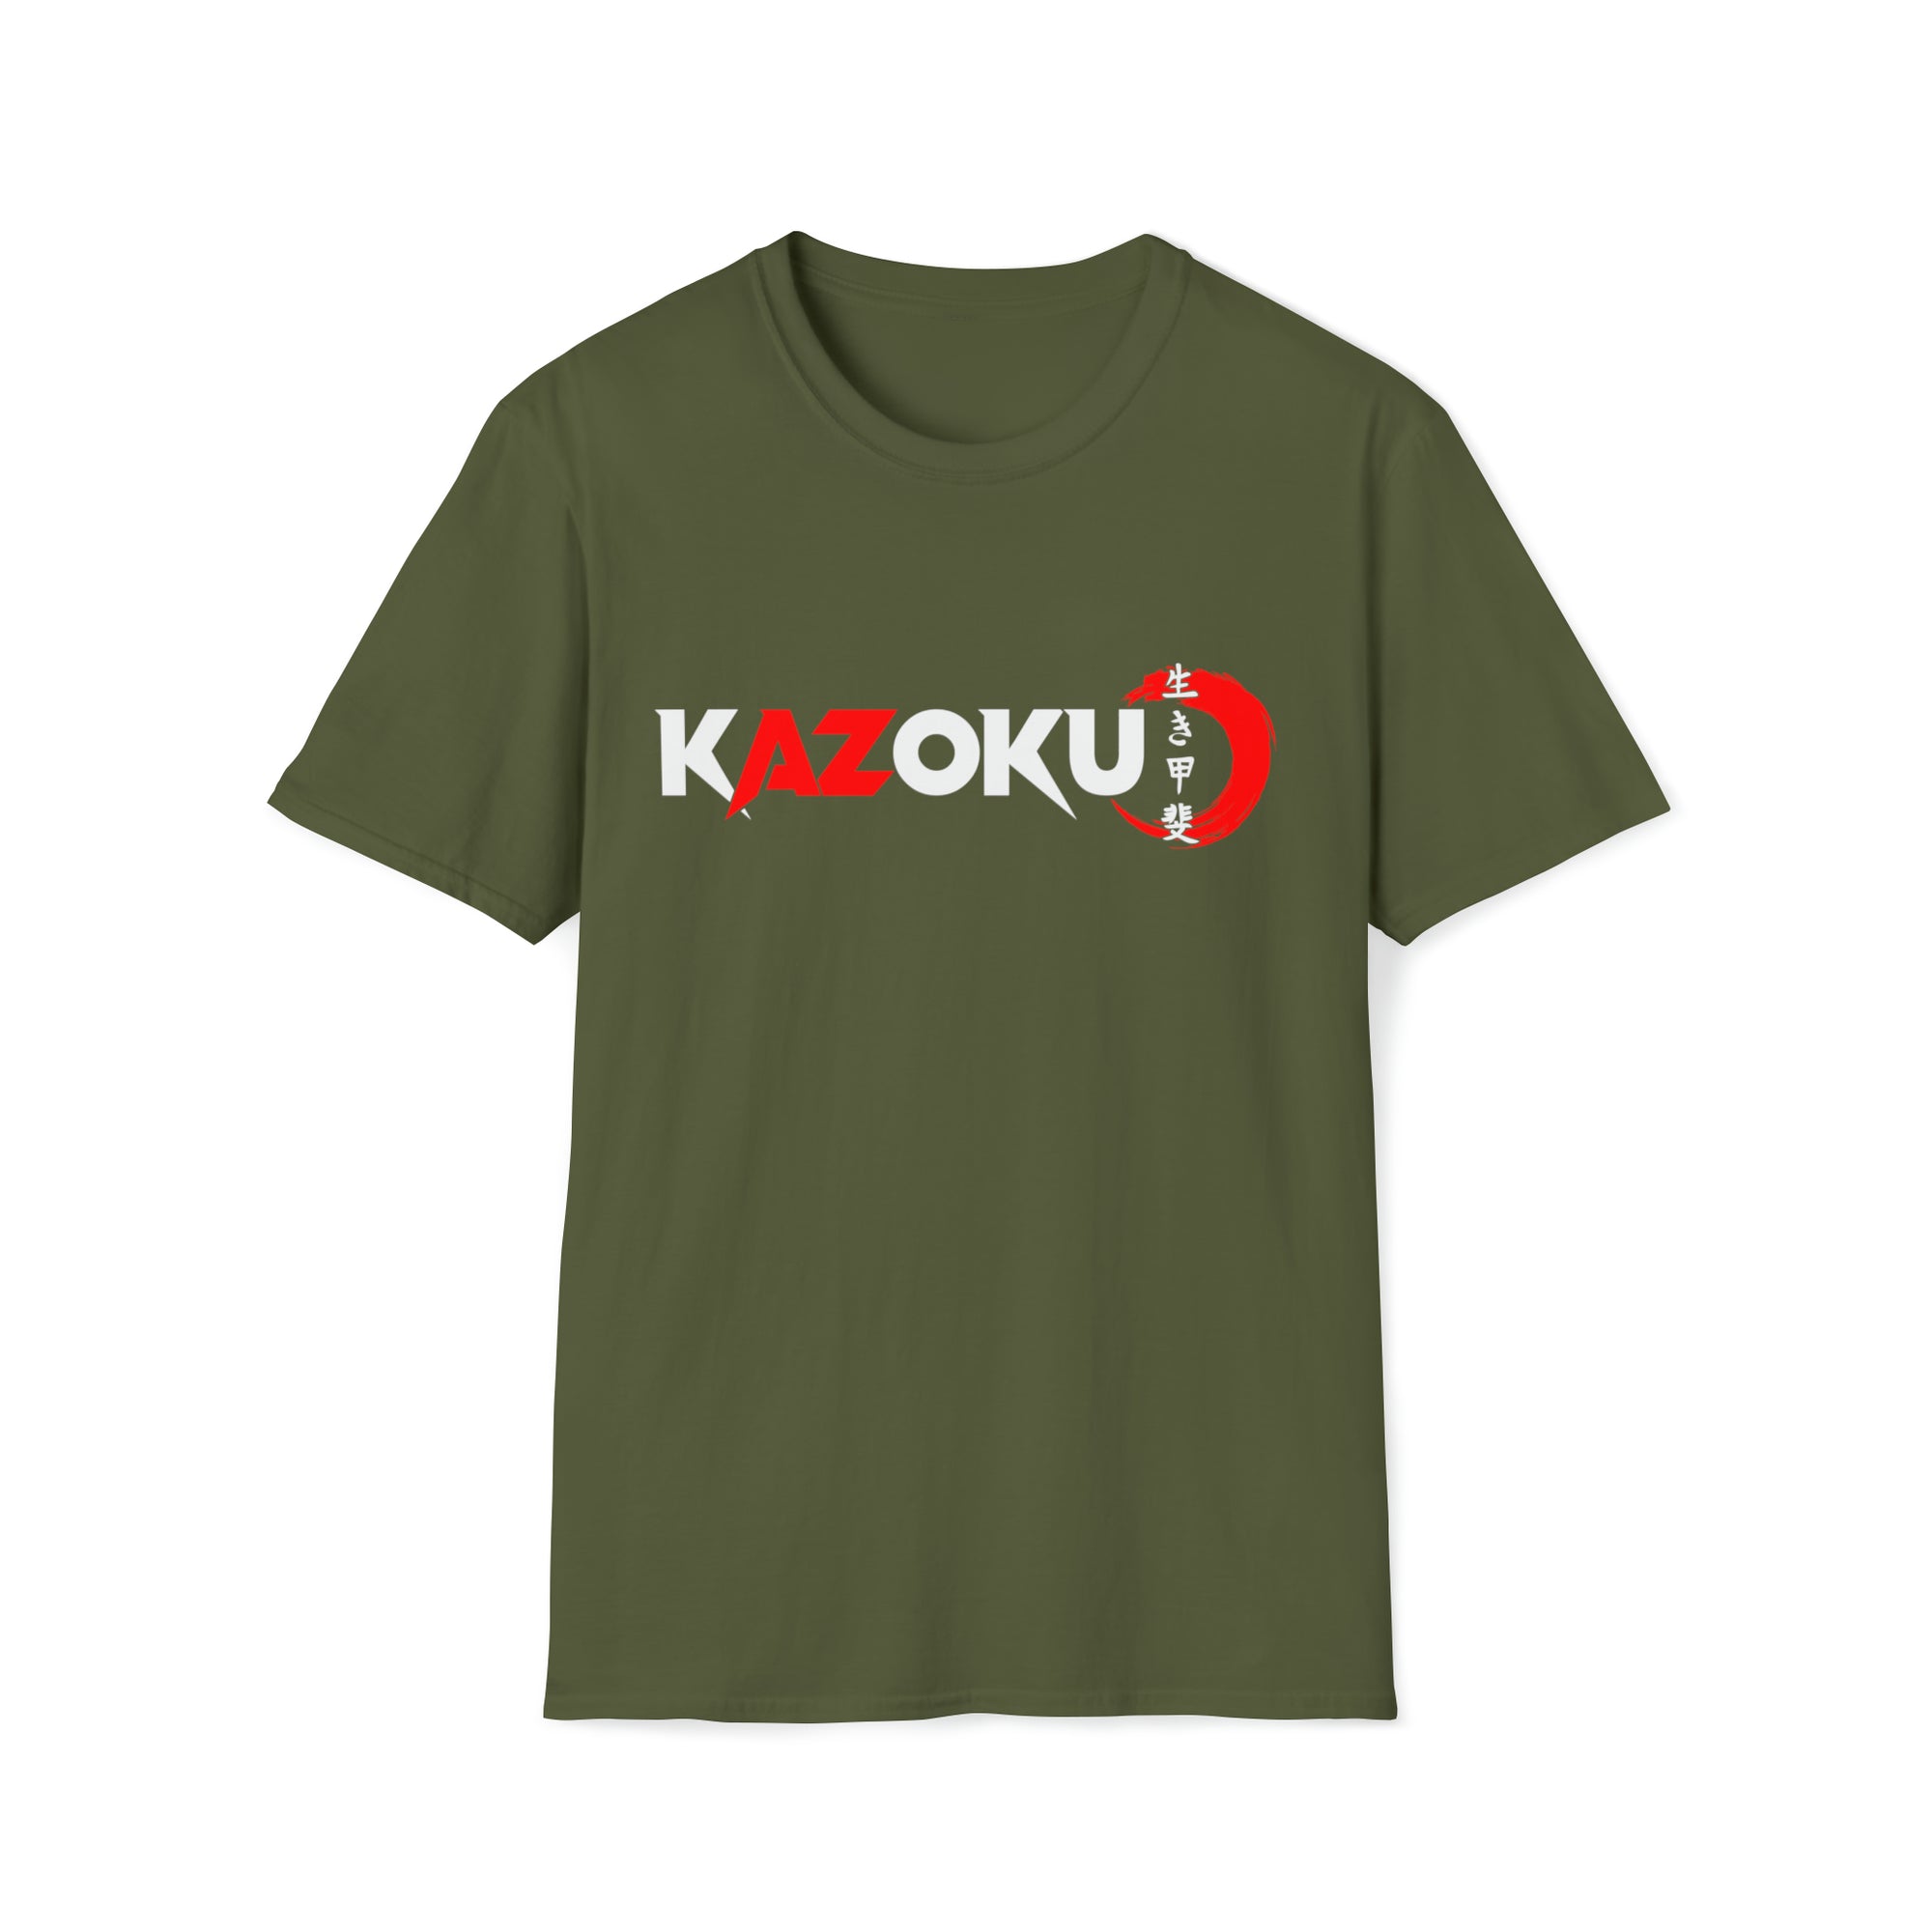 Kazoku 3 shirt